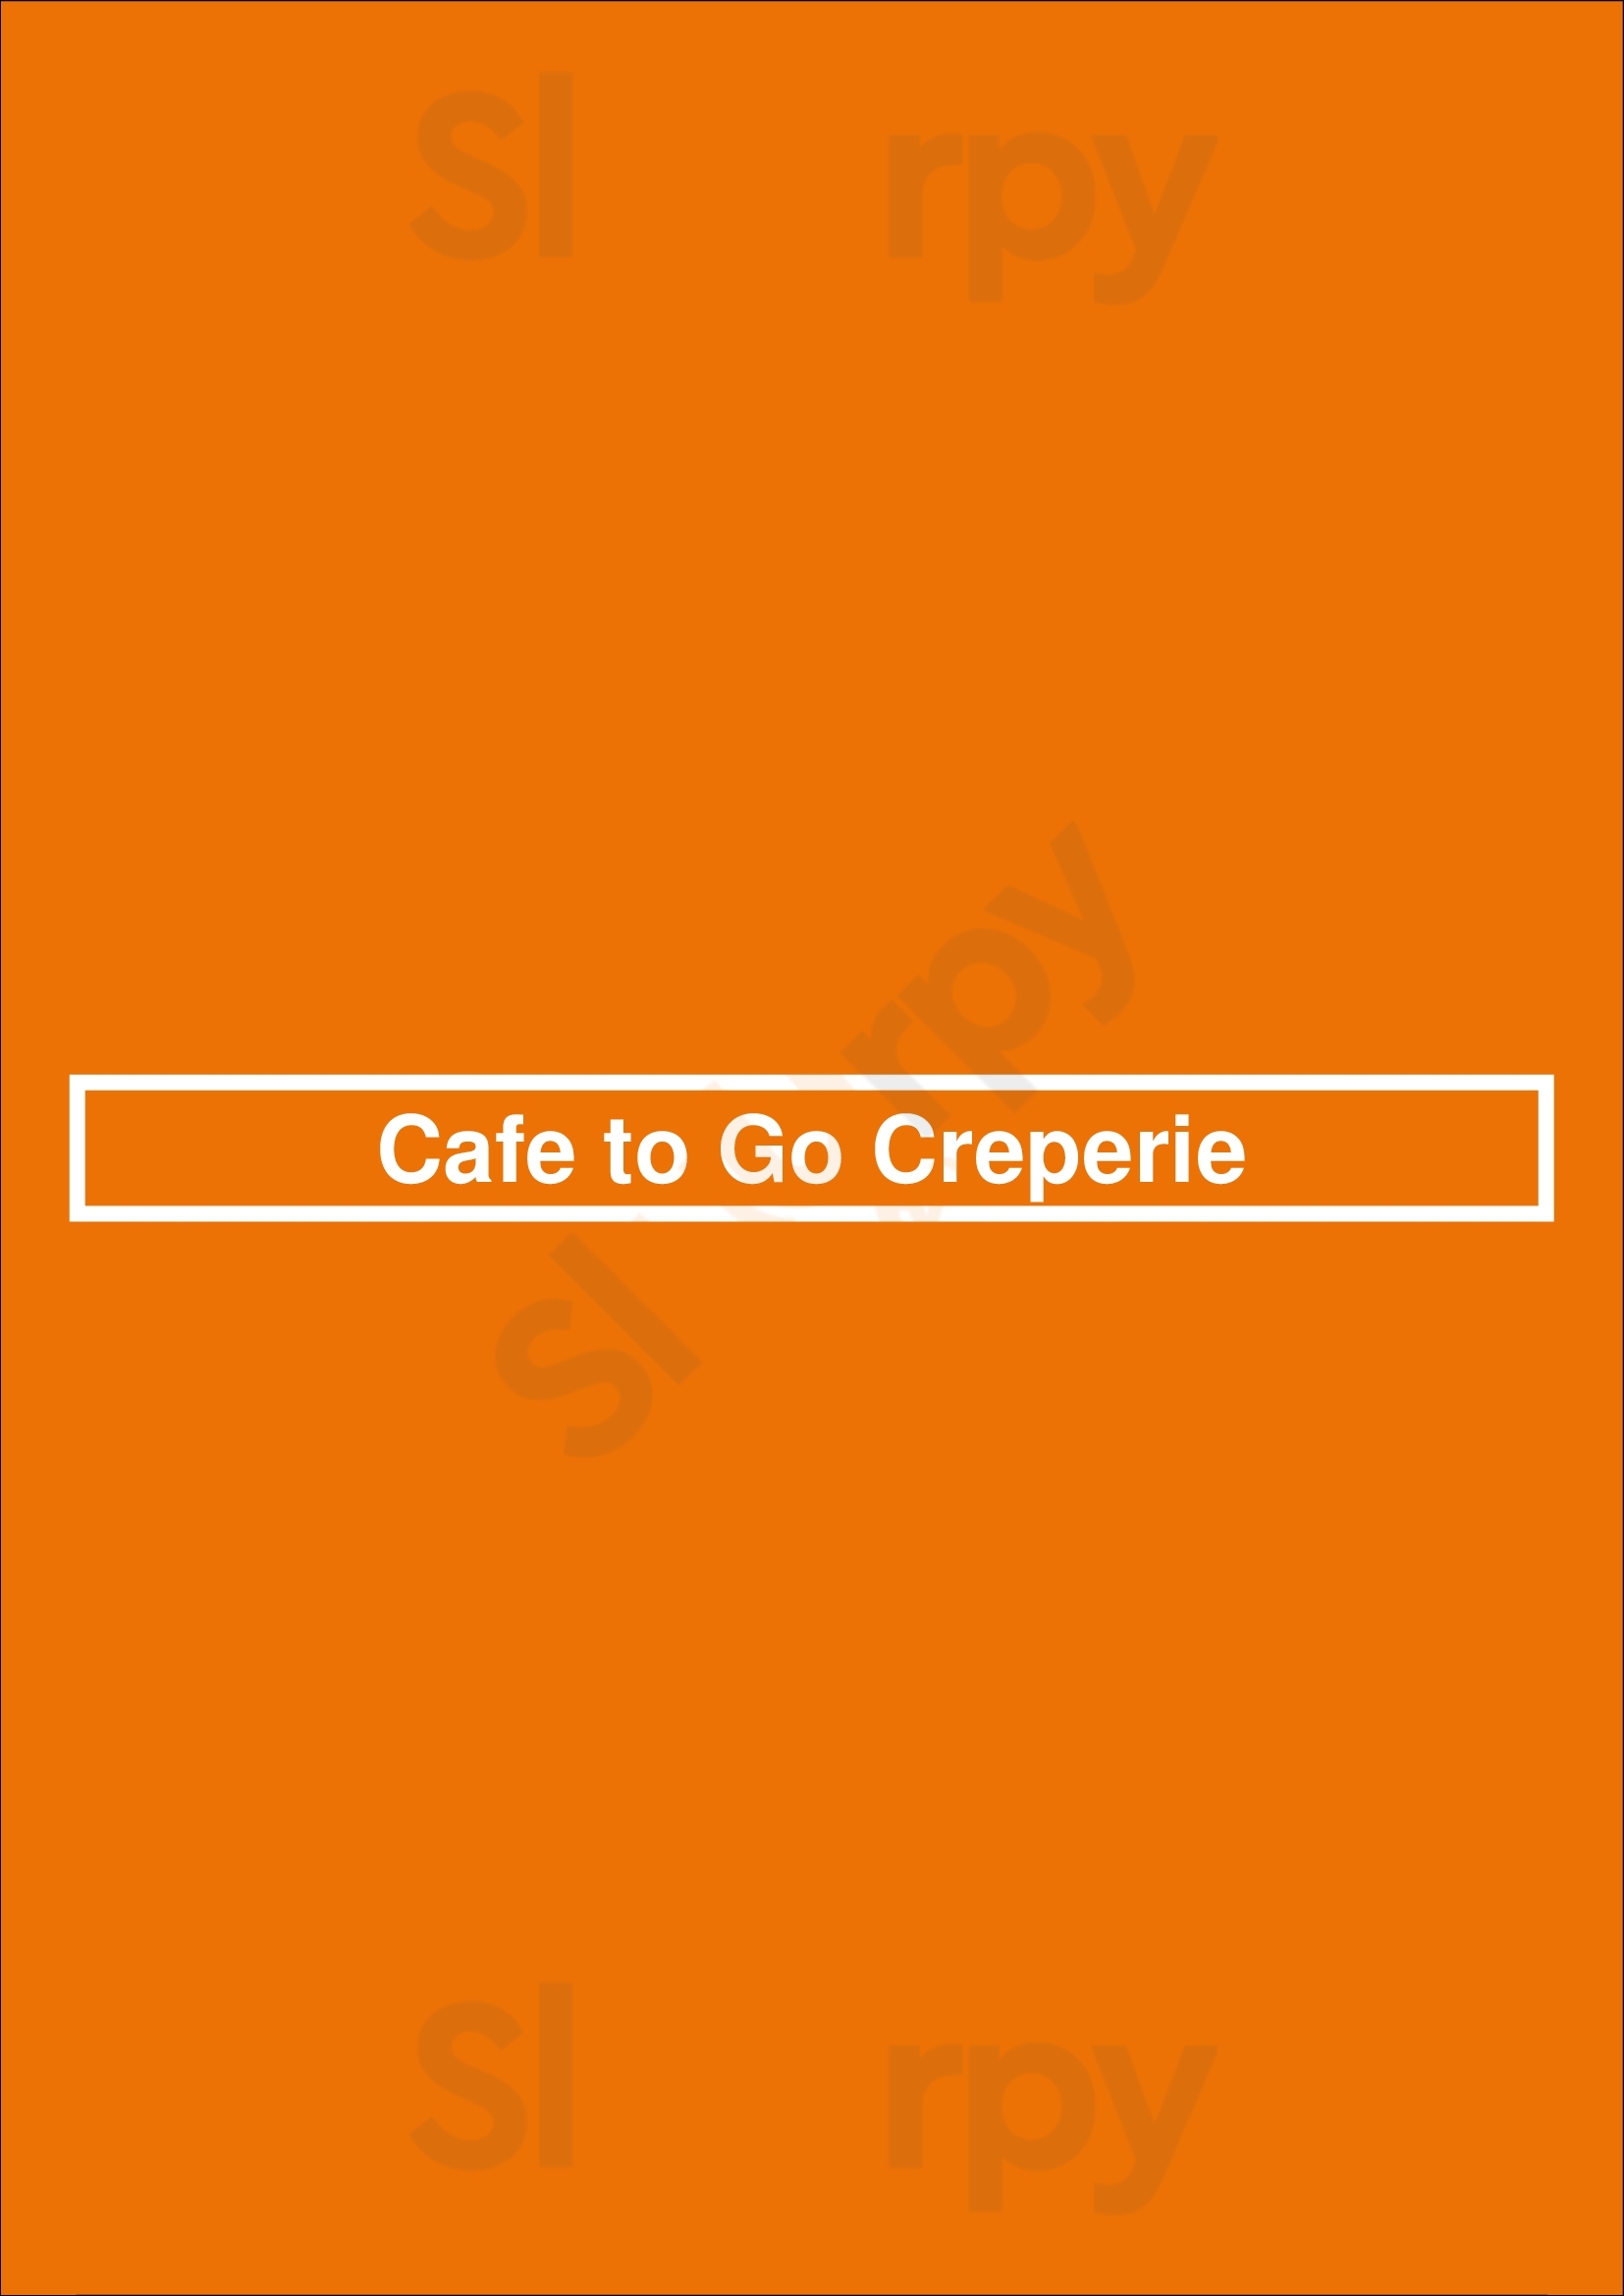 Cafe To Go Creperie Astoria Menu - 1